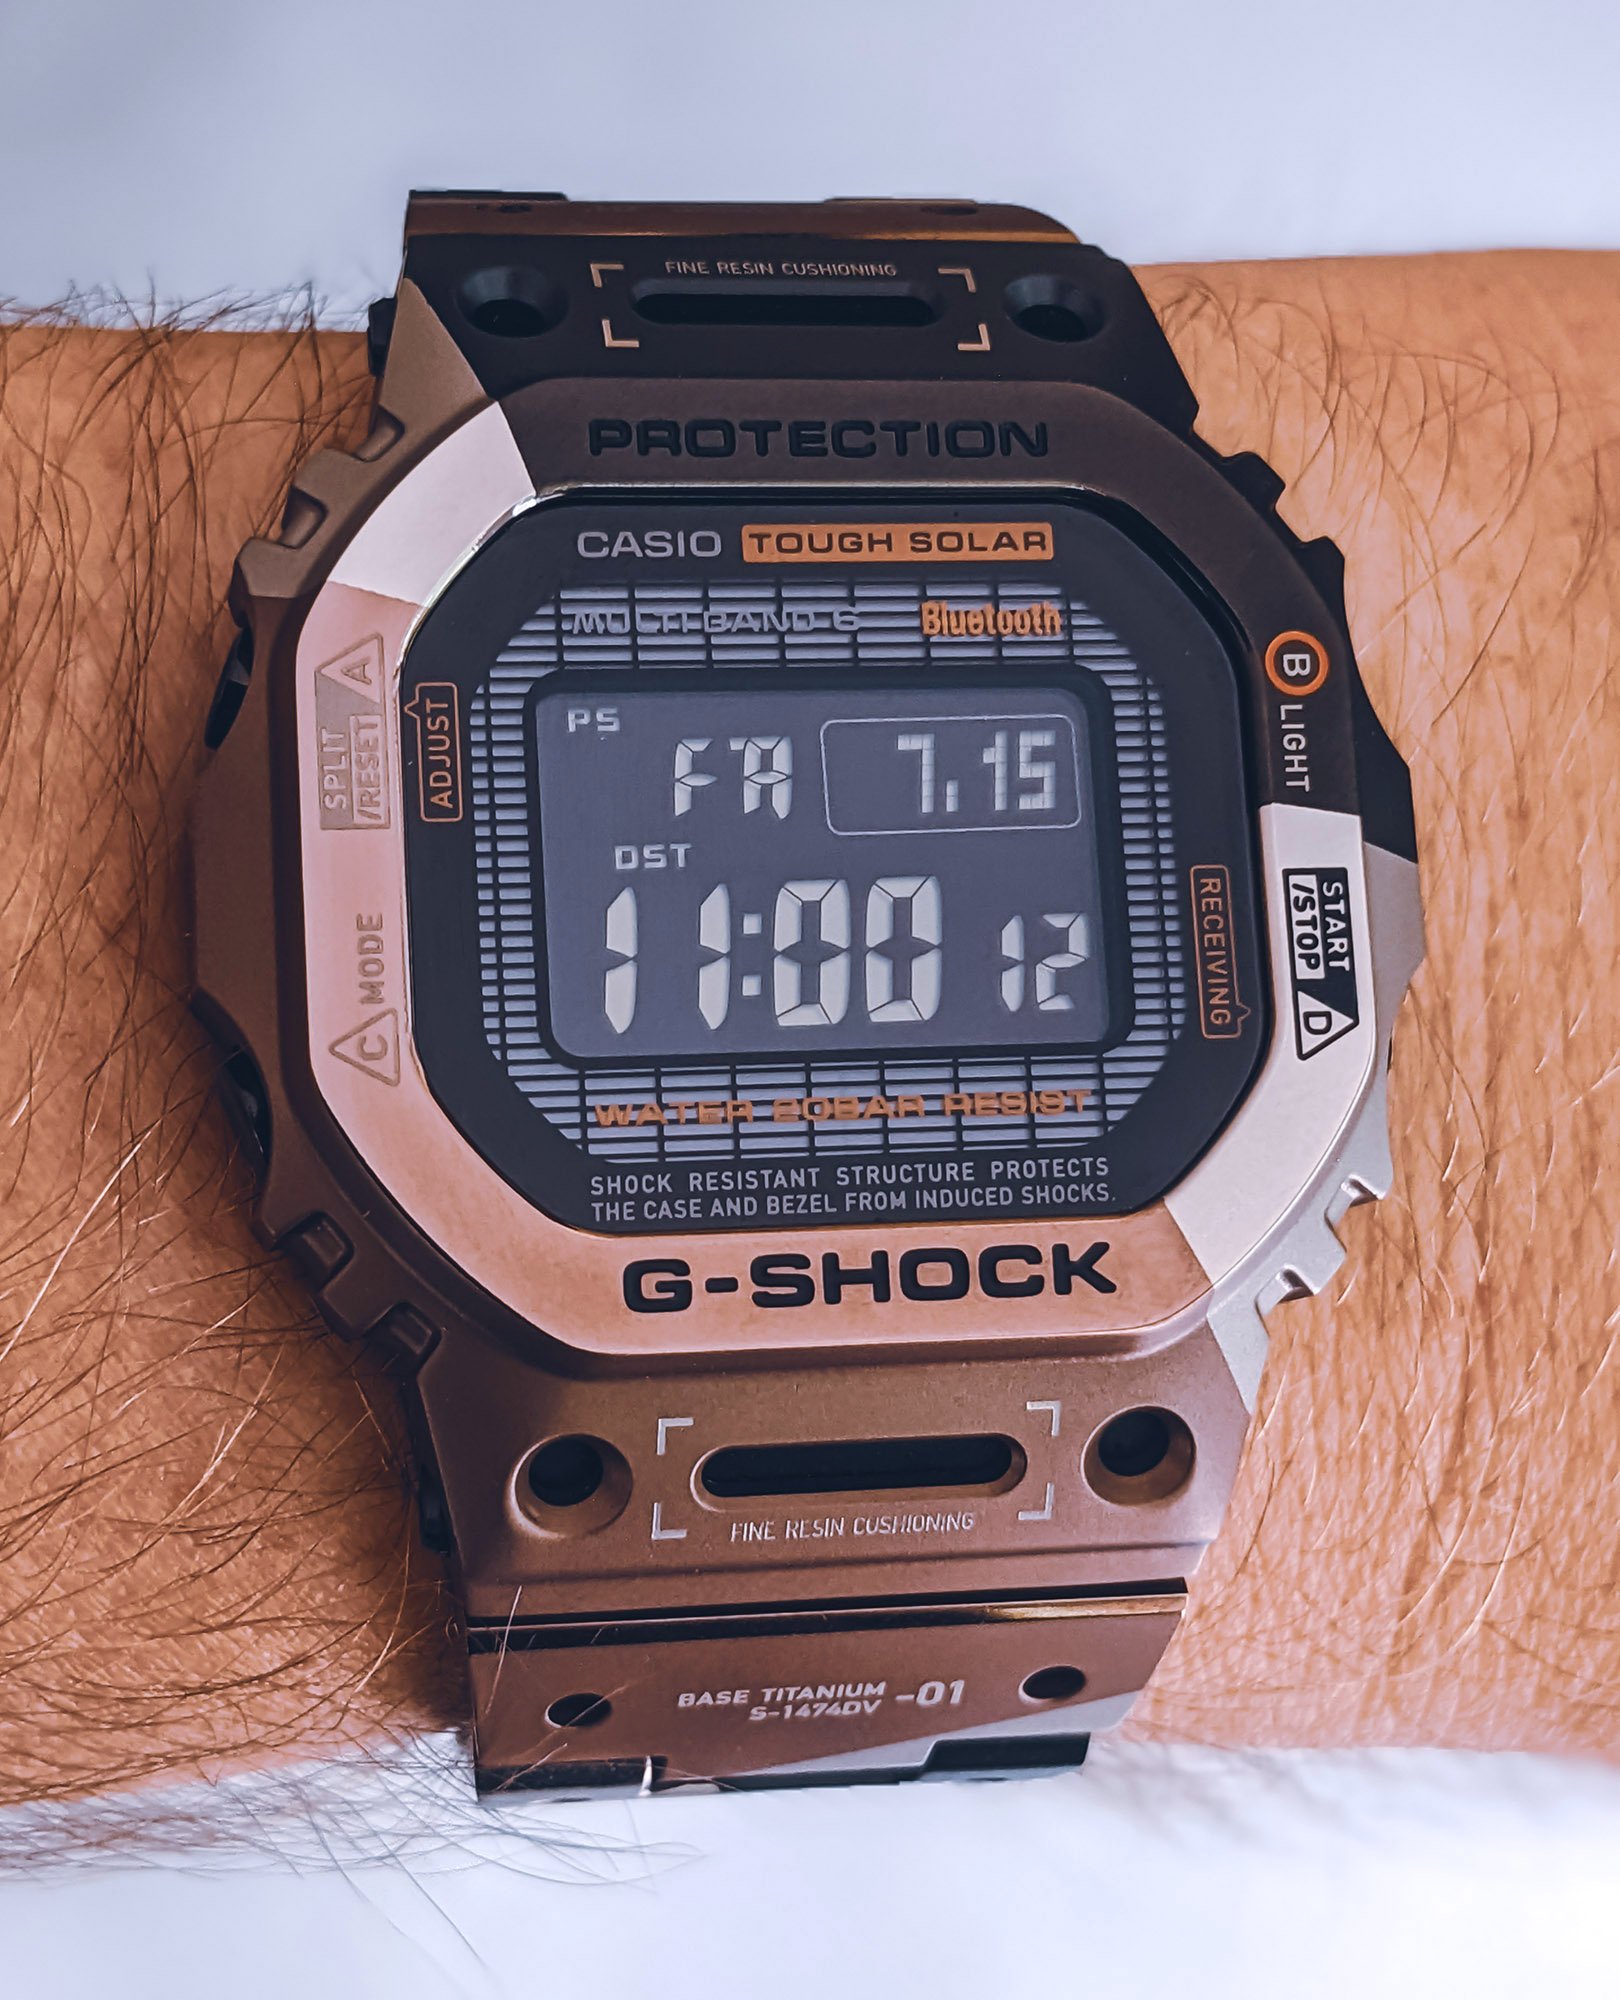 Обзор часов: Casio G-Shock GMWB5000TVB-1